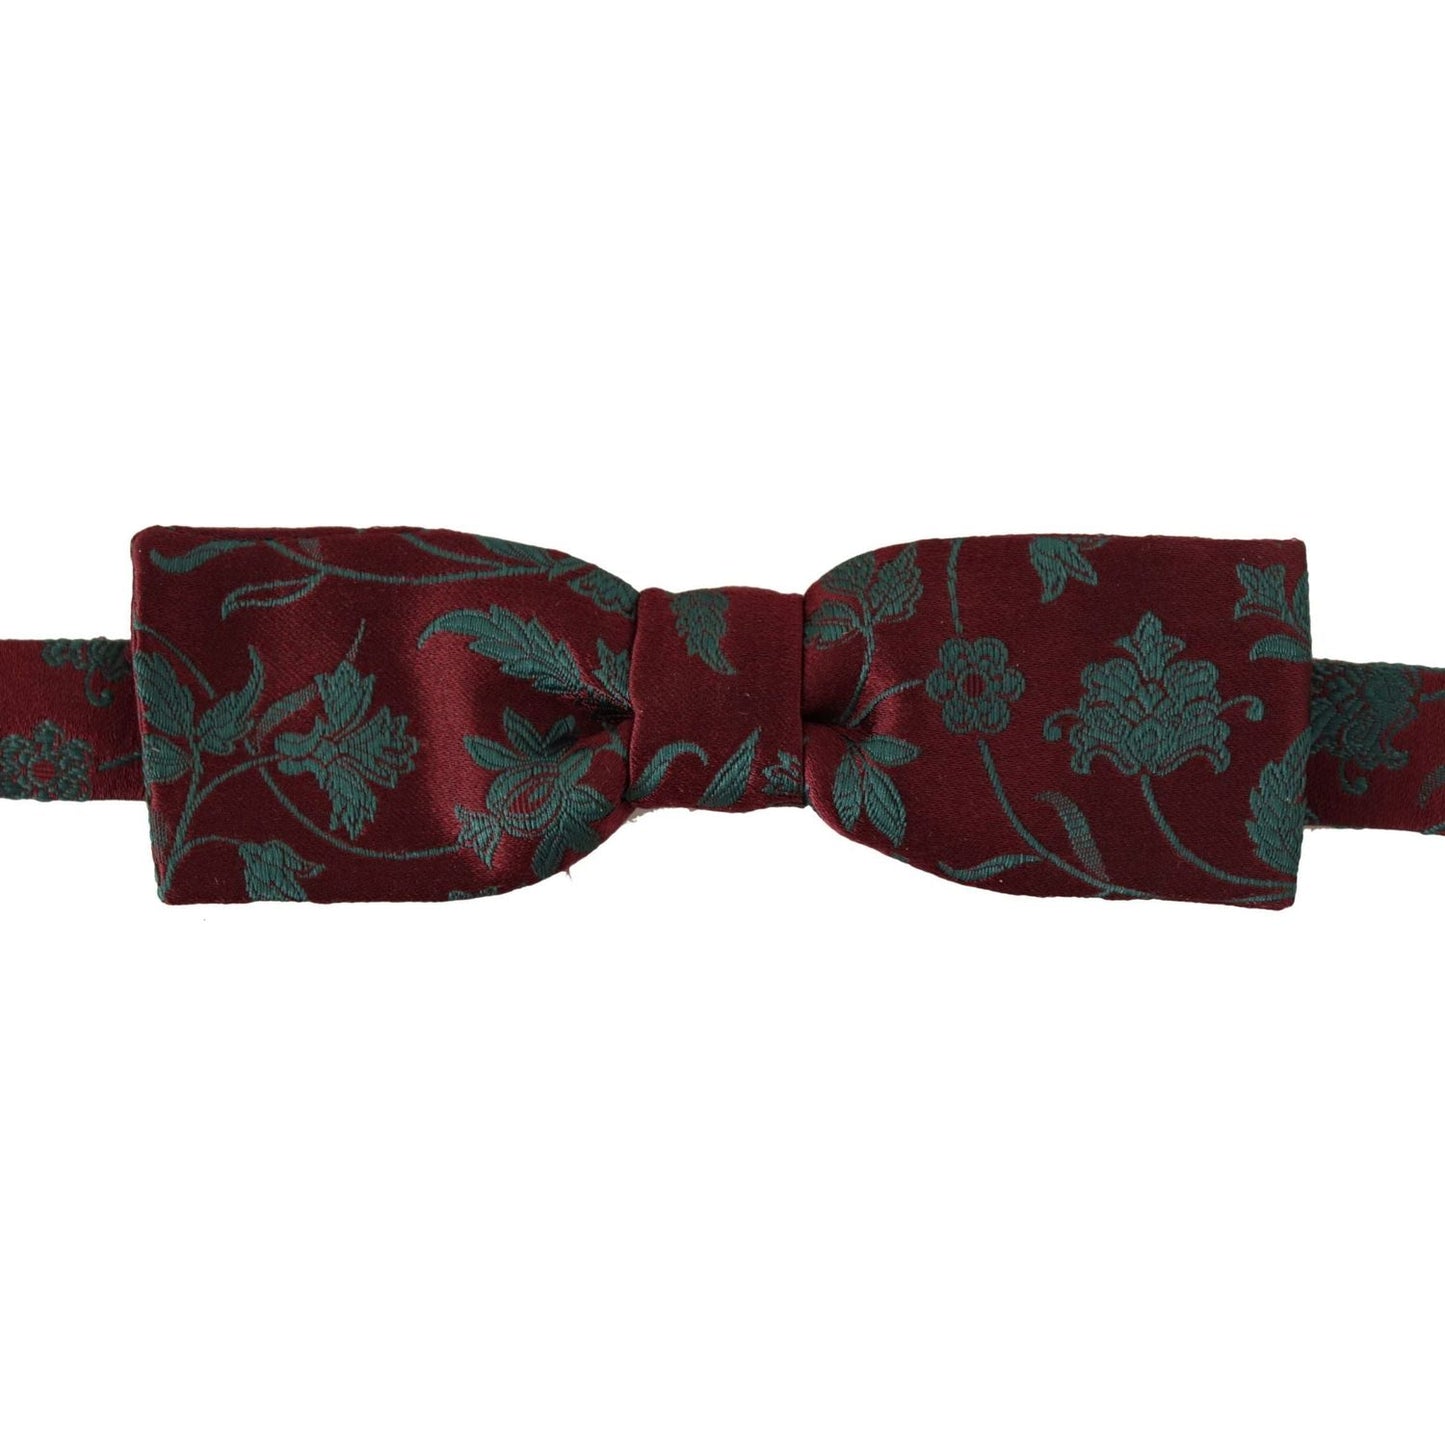 Elegant Maroon Patterned Bow Tie